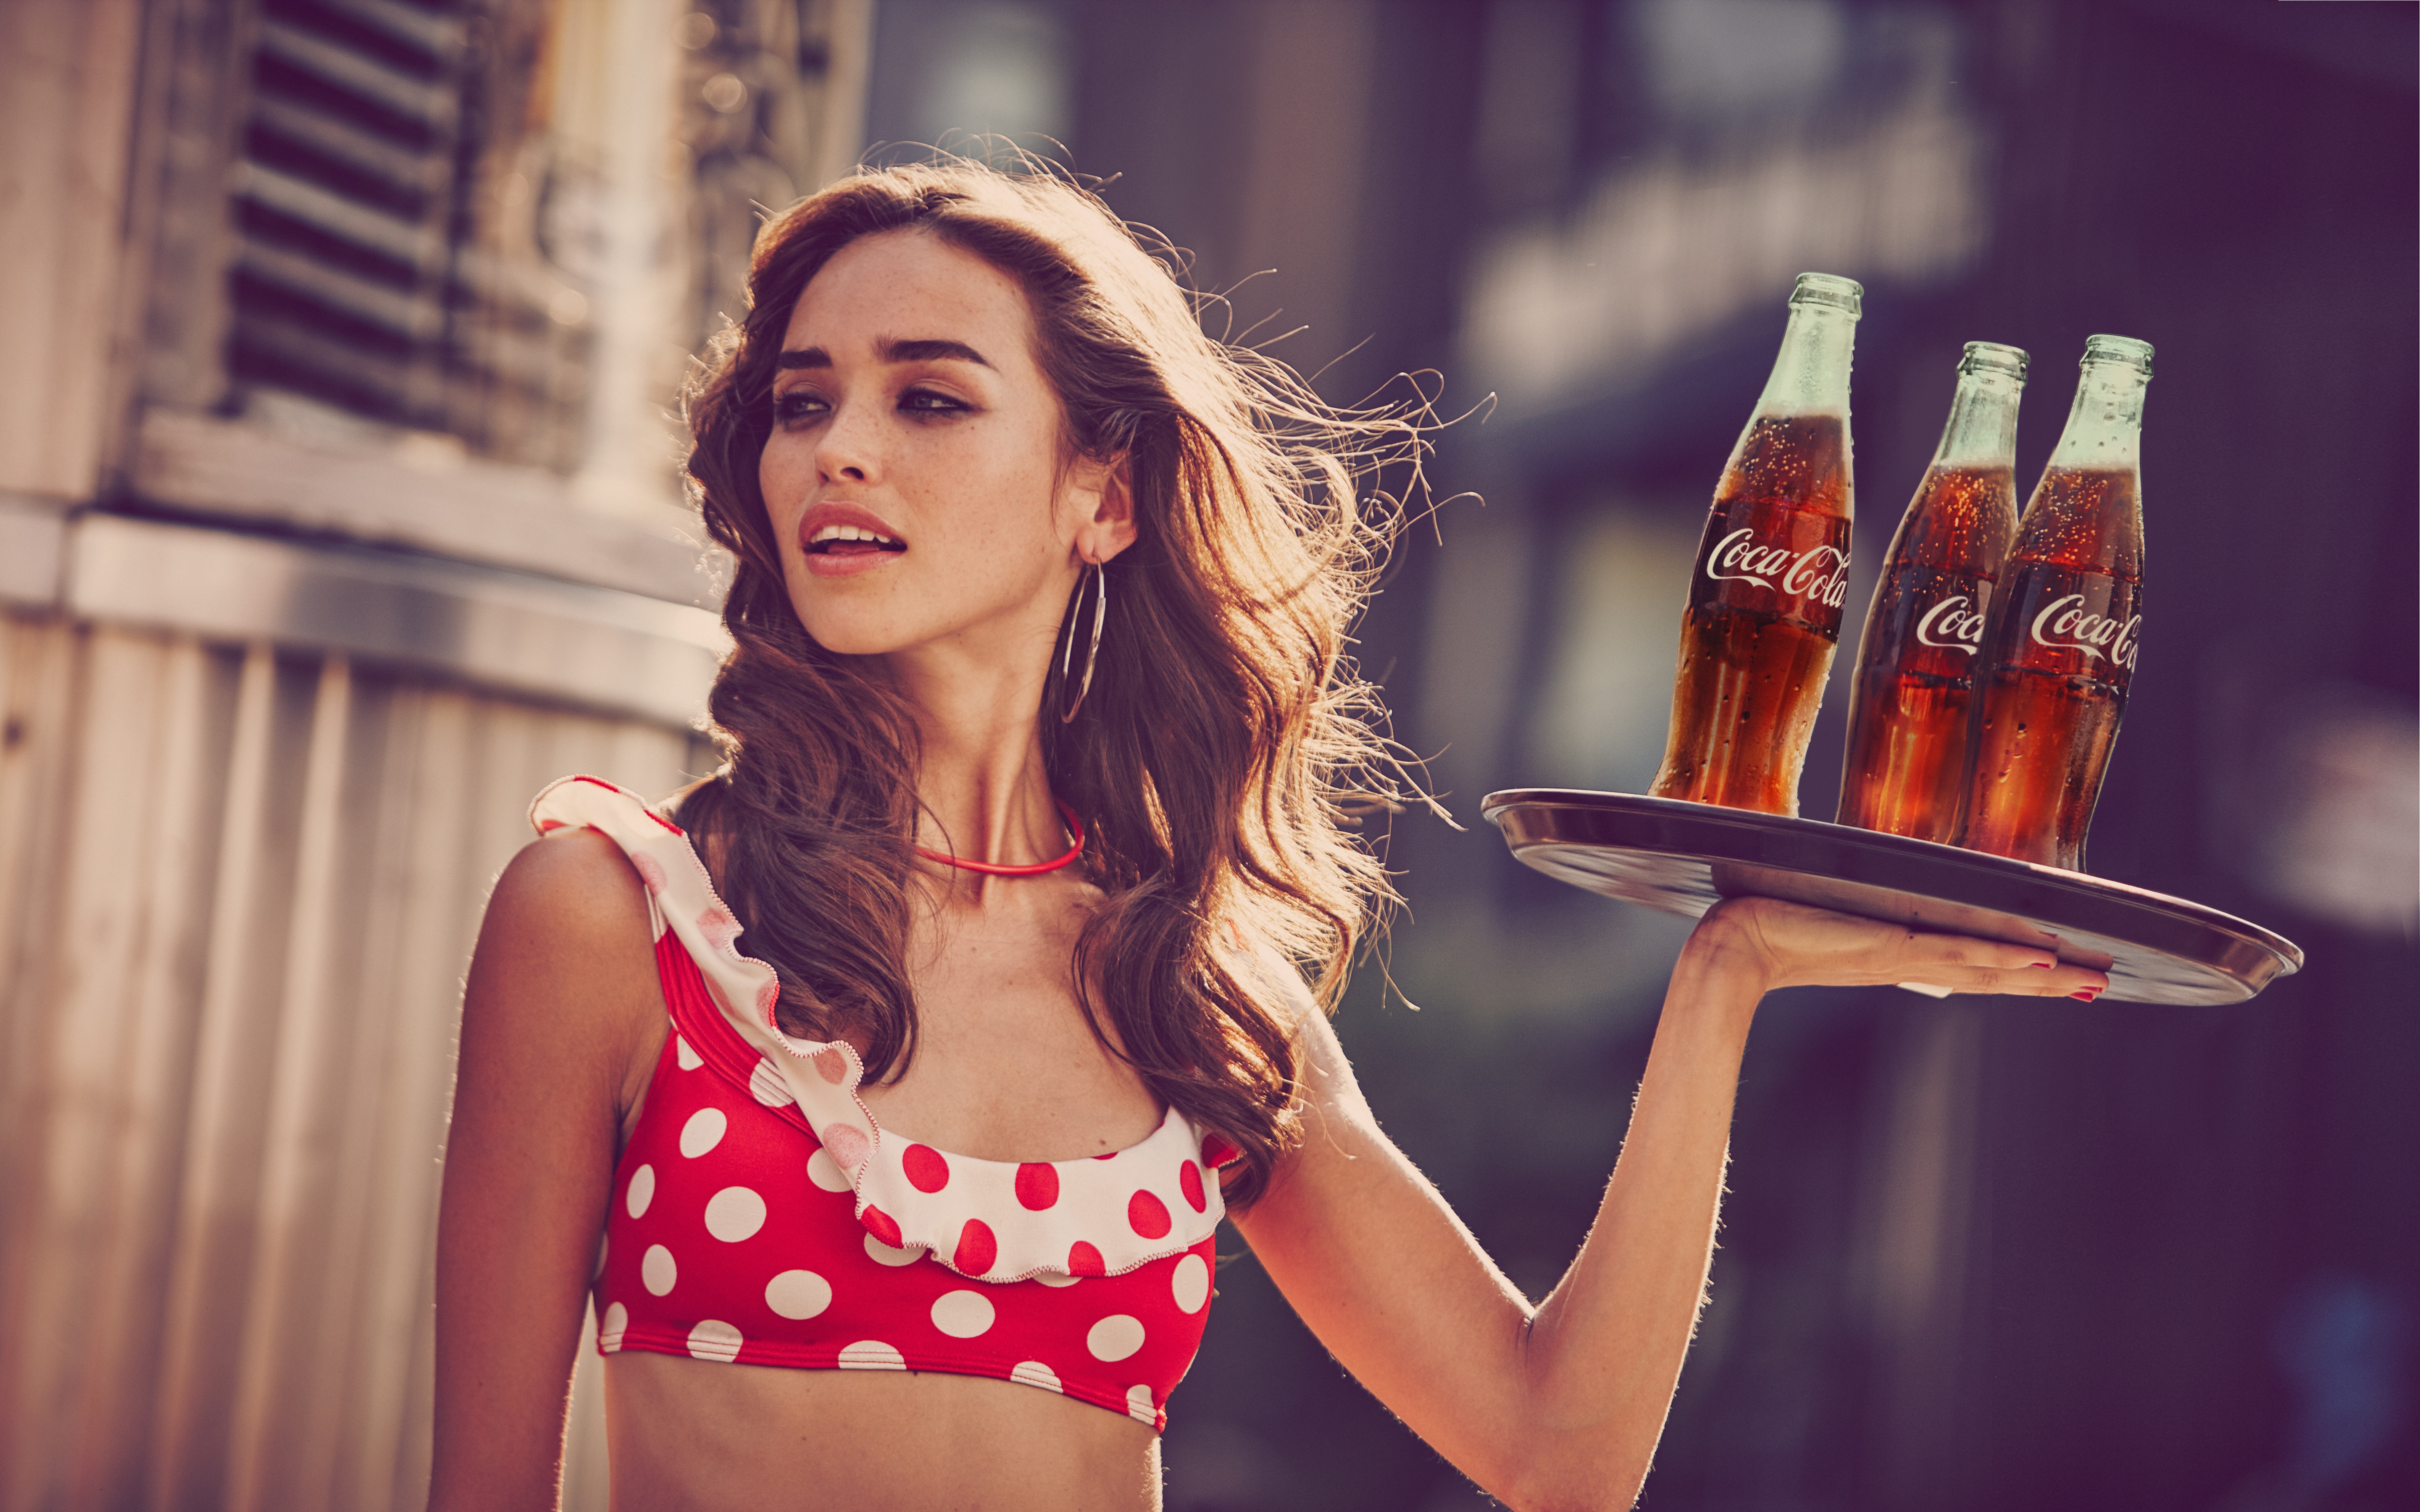 Красивые девушки в рекламе. Кока кола реклама. Девушка. Coca Cola реклама.